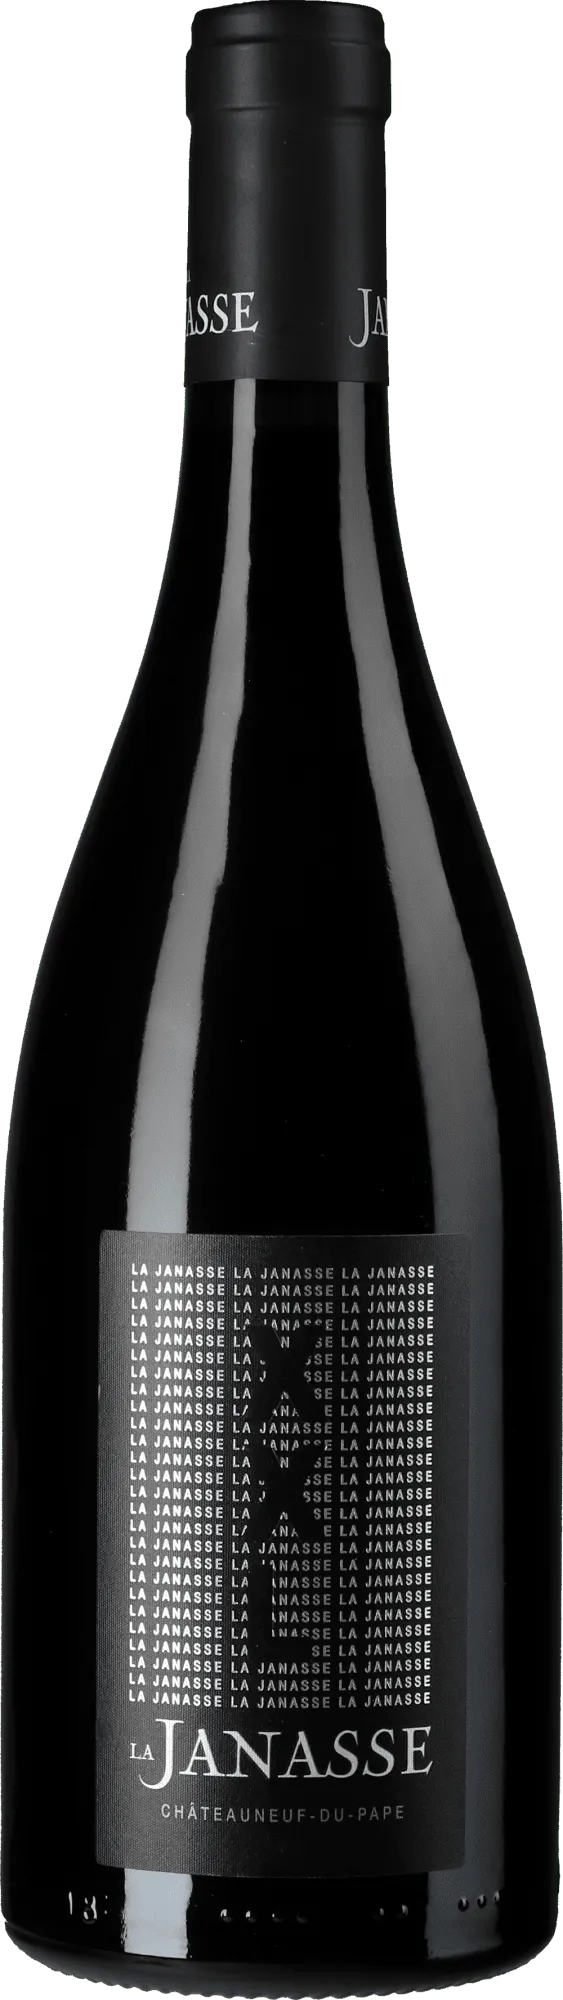 Bottle of Domaine de la Janasse Châteauneuf-du-Pape XXL from search results